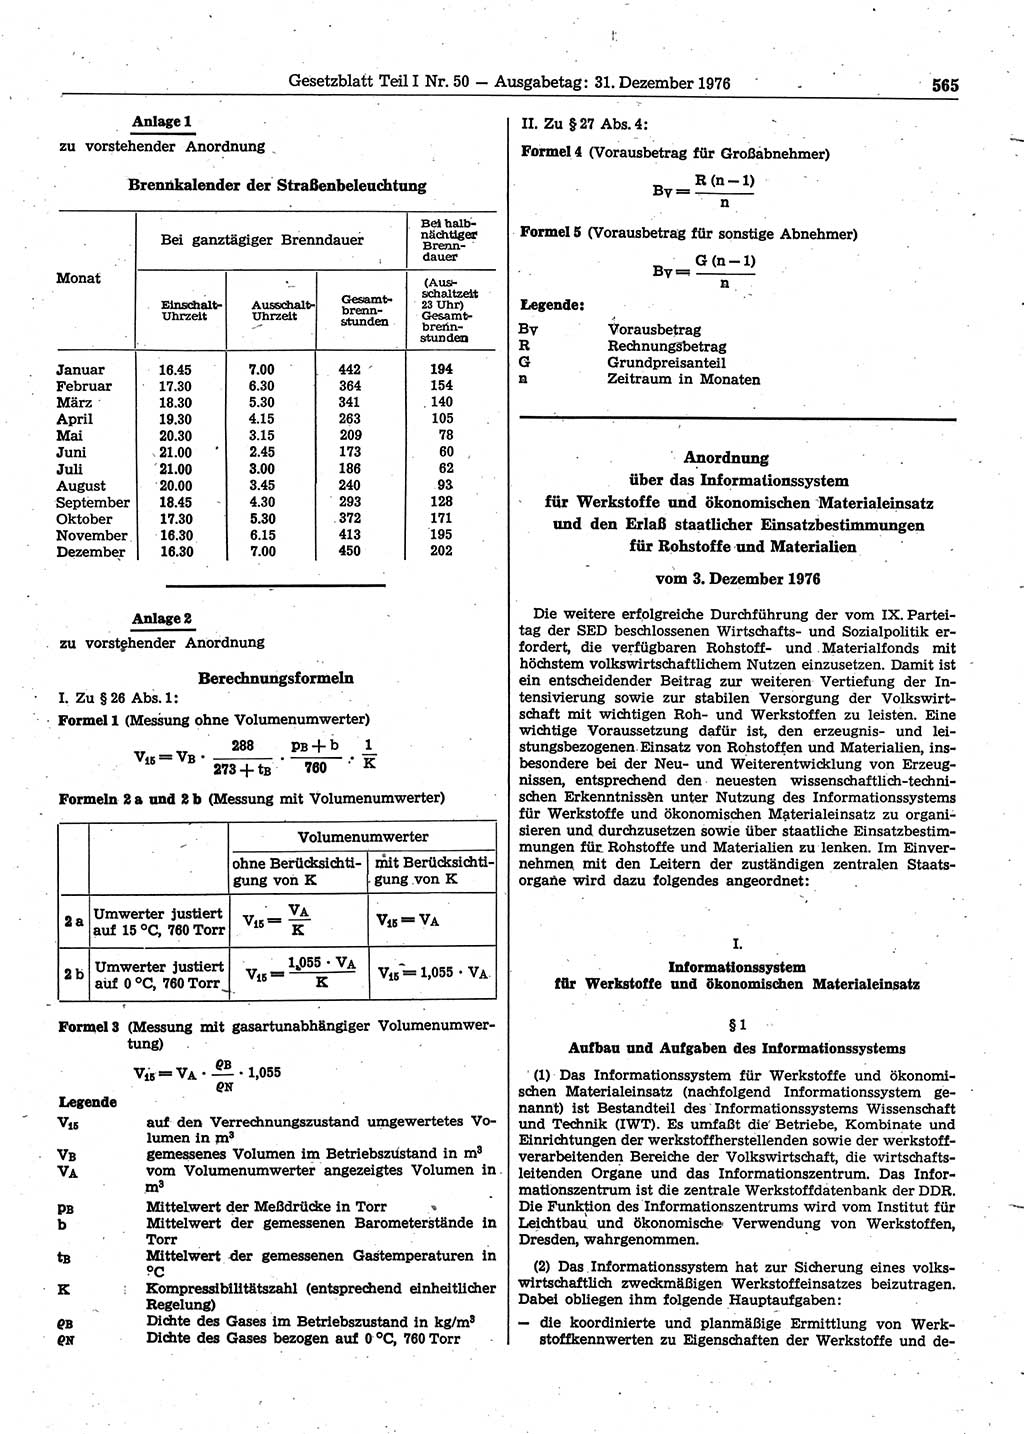 Gesetzblatt (GBl.) der Deutschen Demokratischen Republik (DDR) Teil Ⅰ 1976, Seite 565 (GBl. DDR Ⅰ 1976, S. 565)